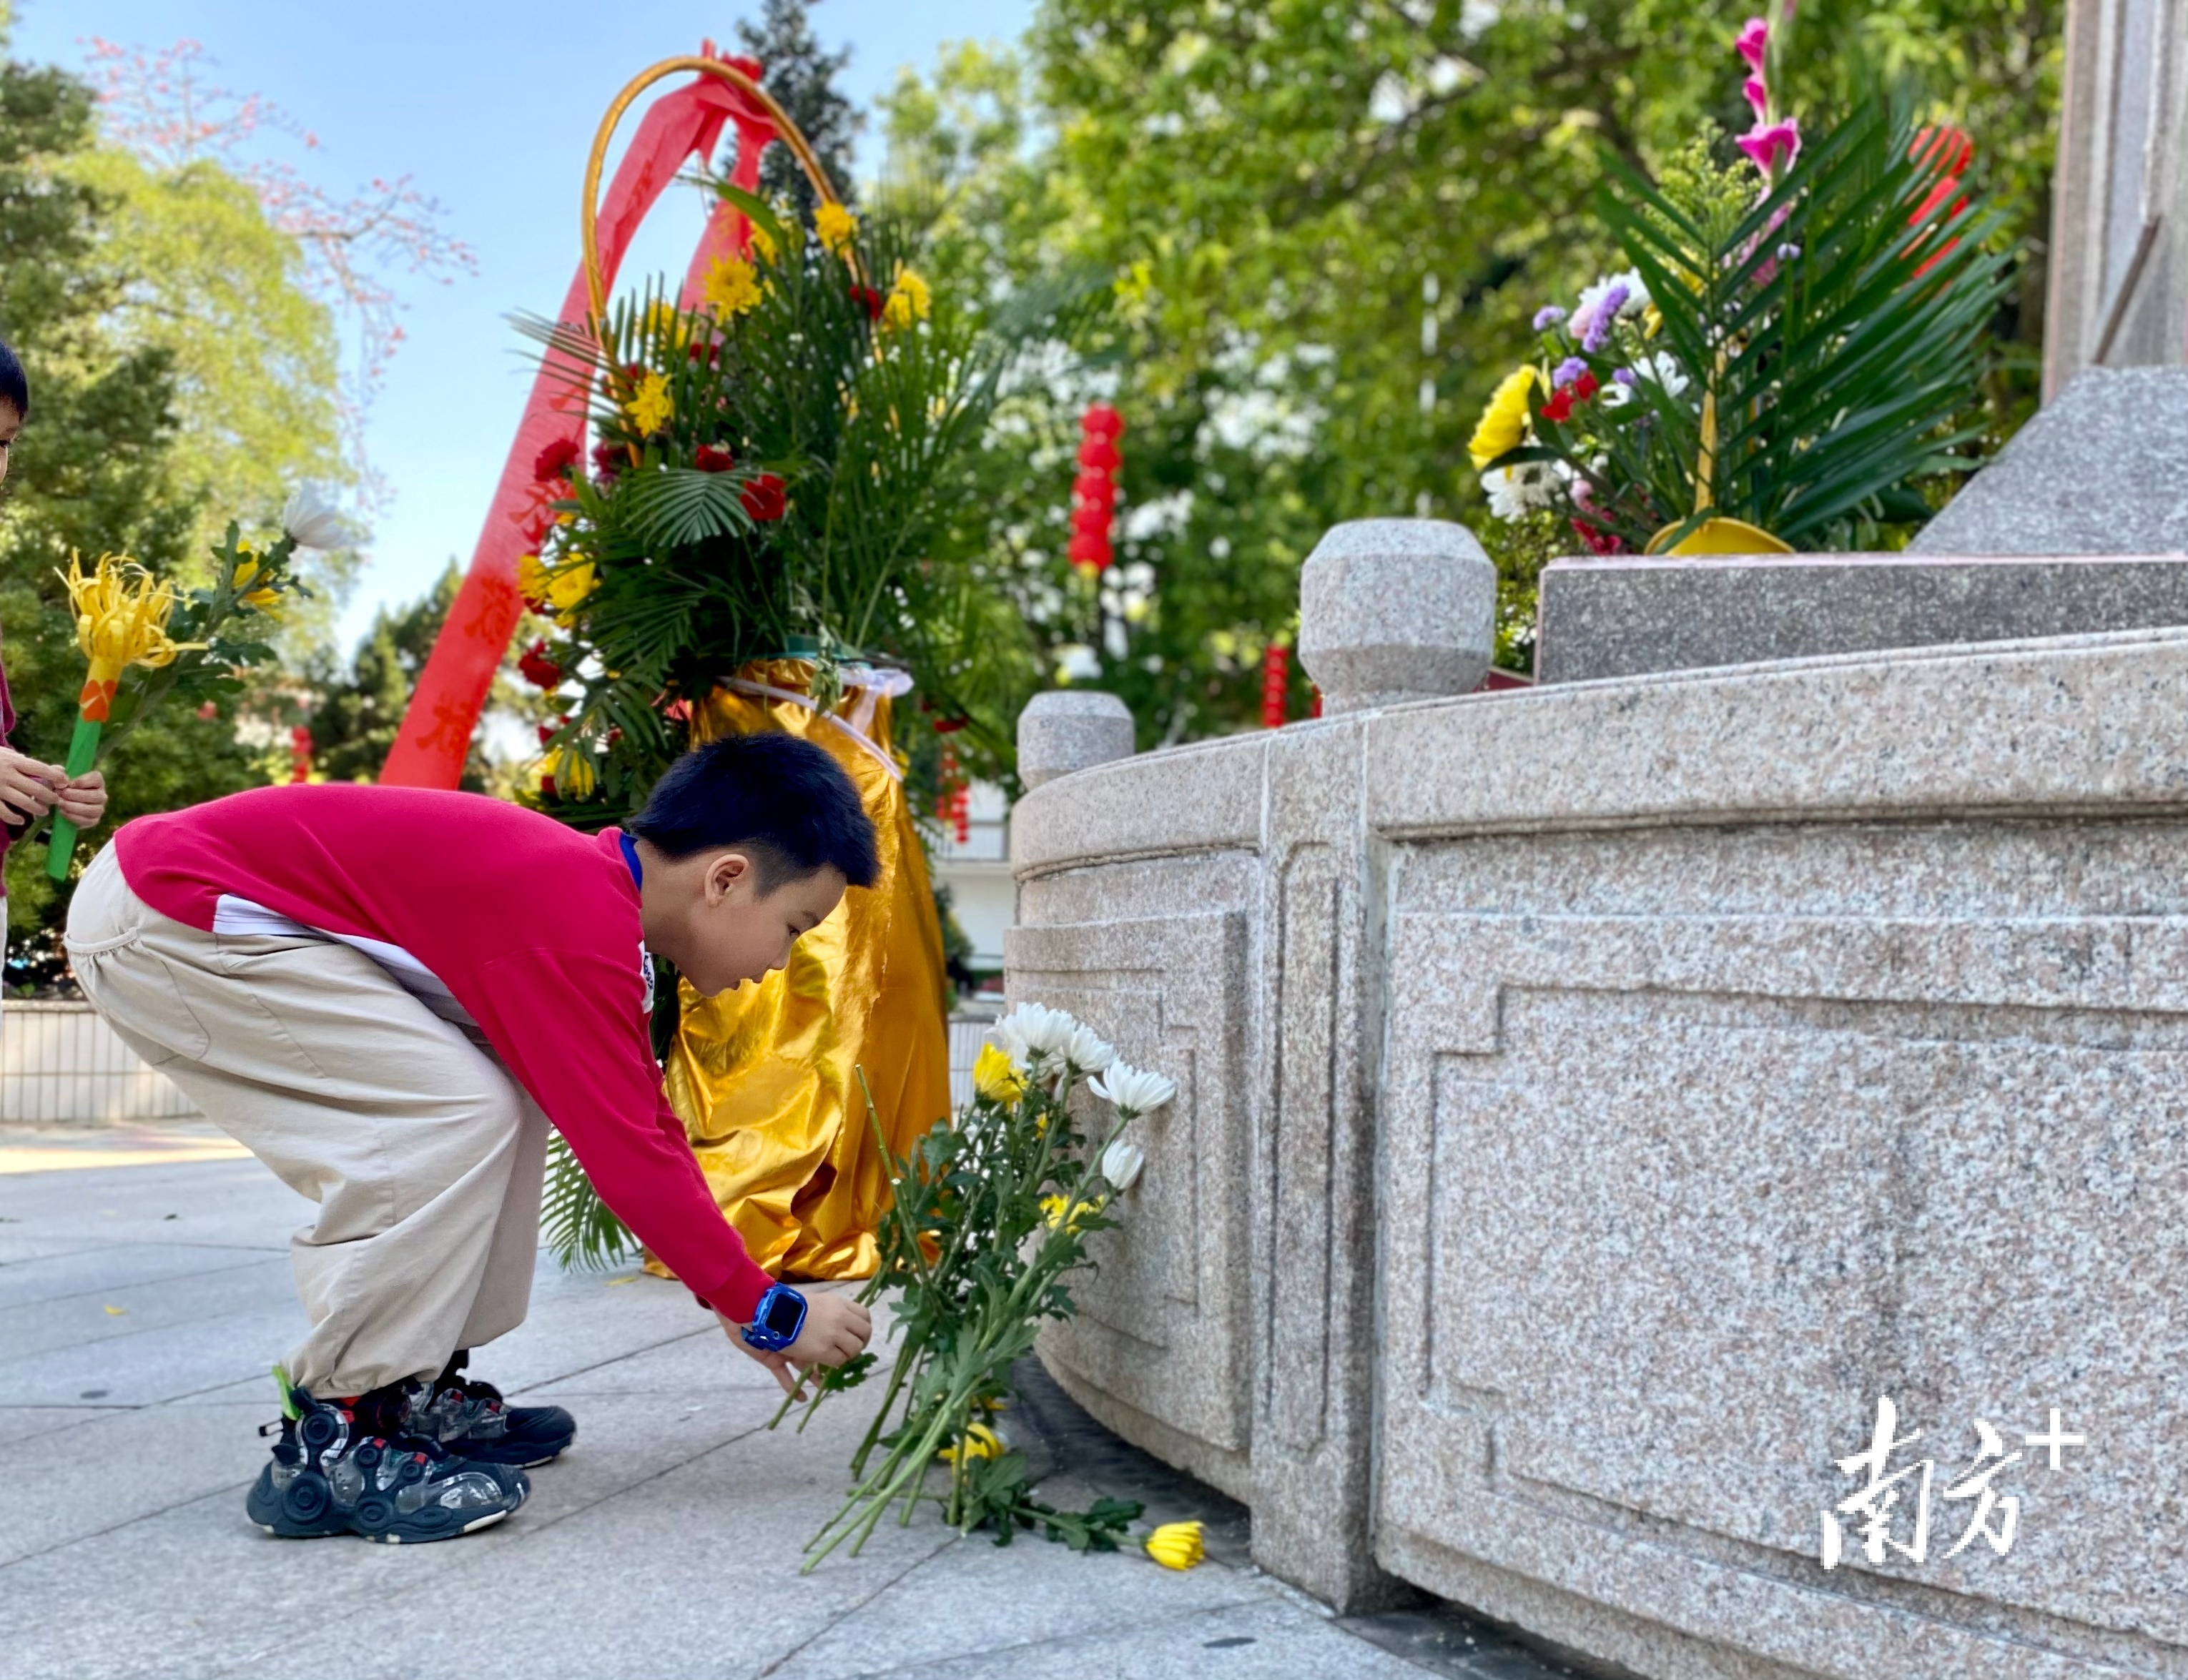 潮州西湖公园内的革命烈士纪念碑前摆满献花肖燕菁 摄